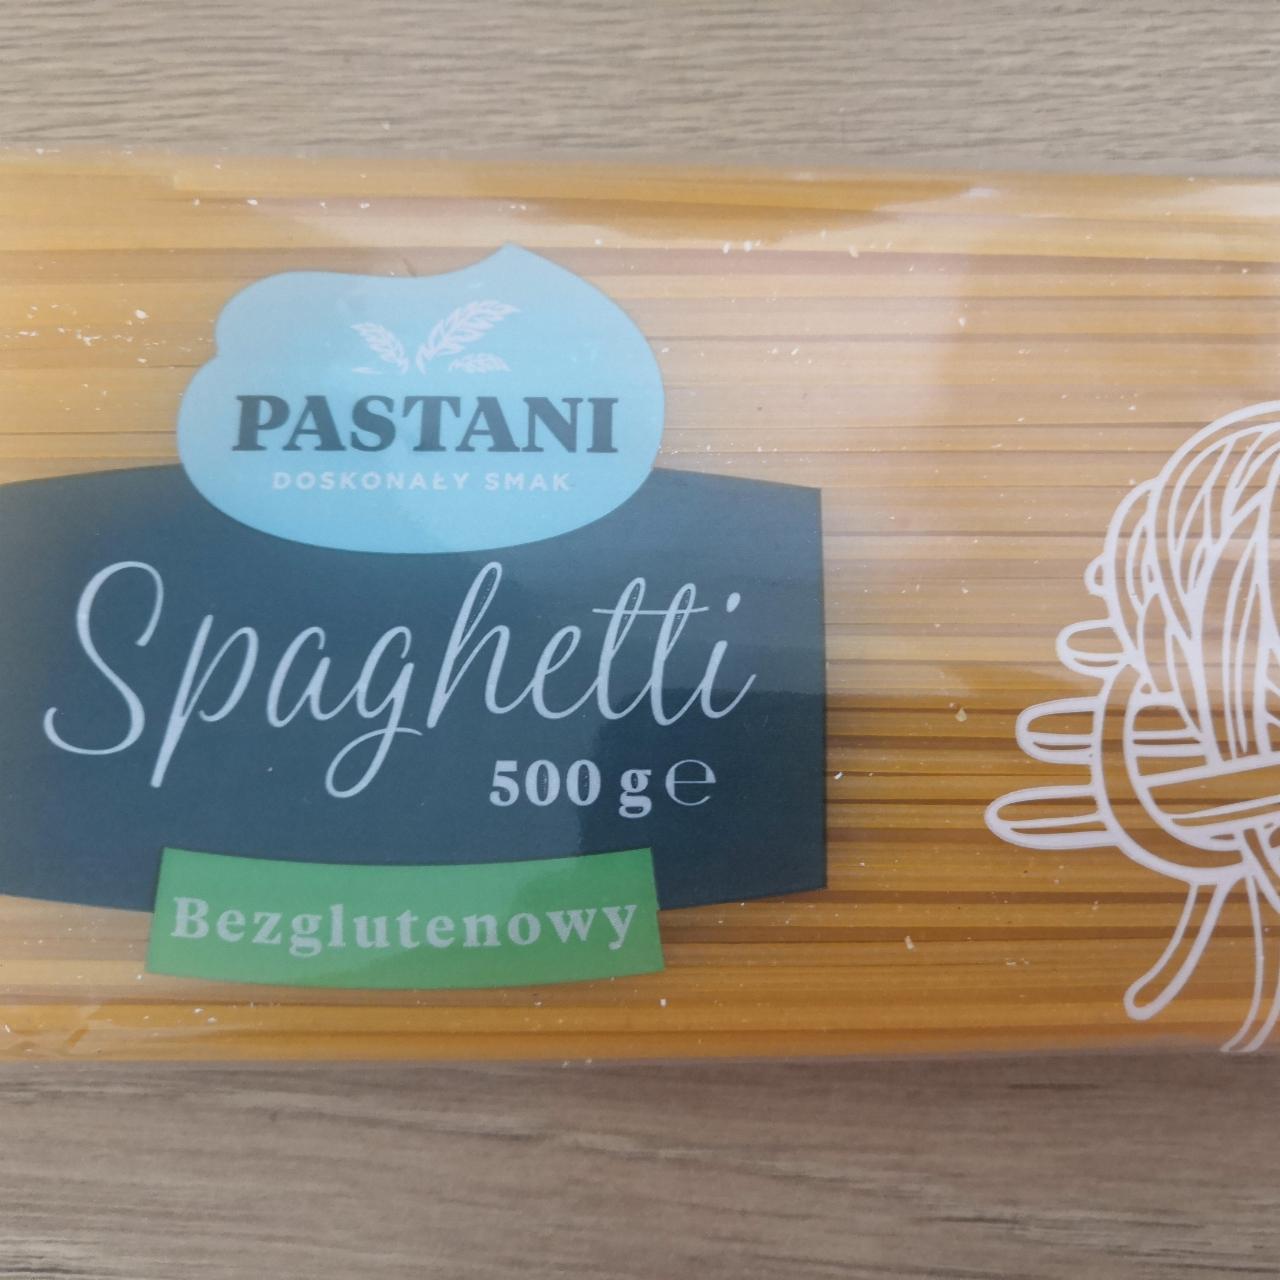 Zdjęcia - Spaghetti Bezglutenowy Pastani